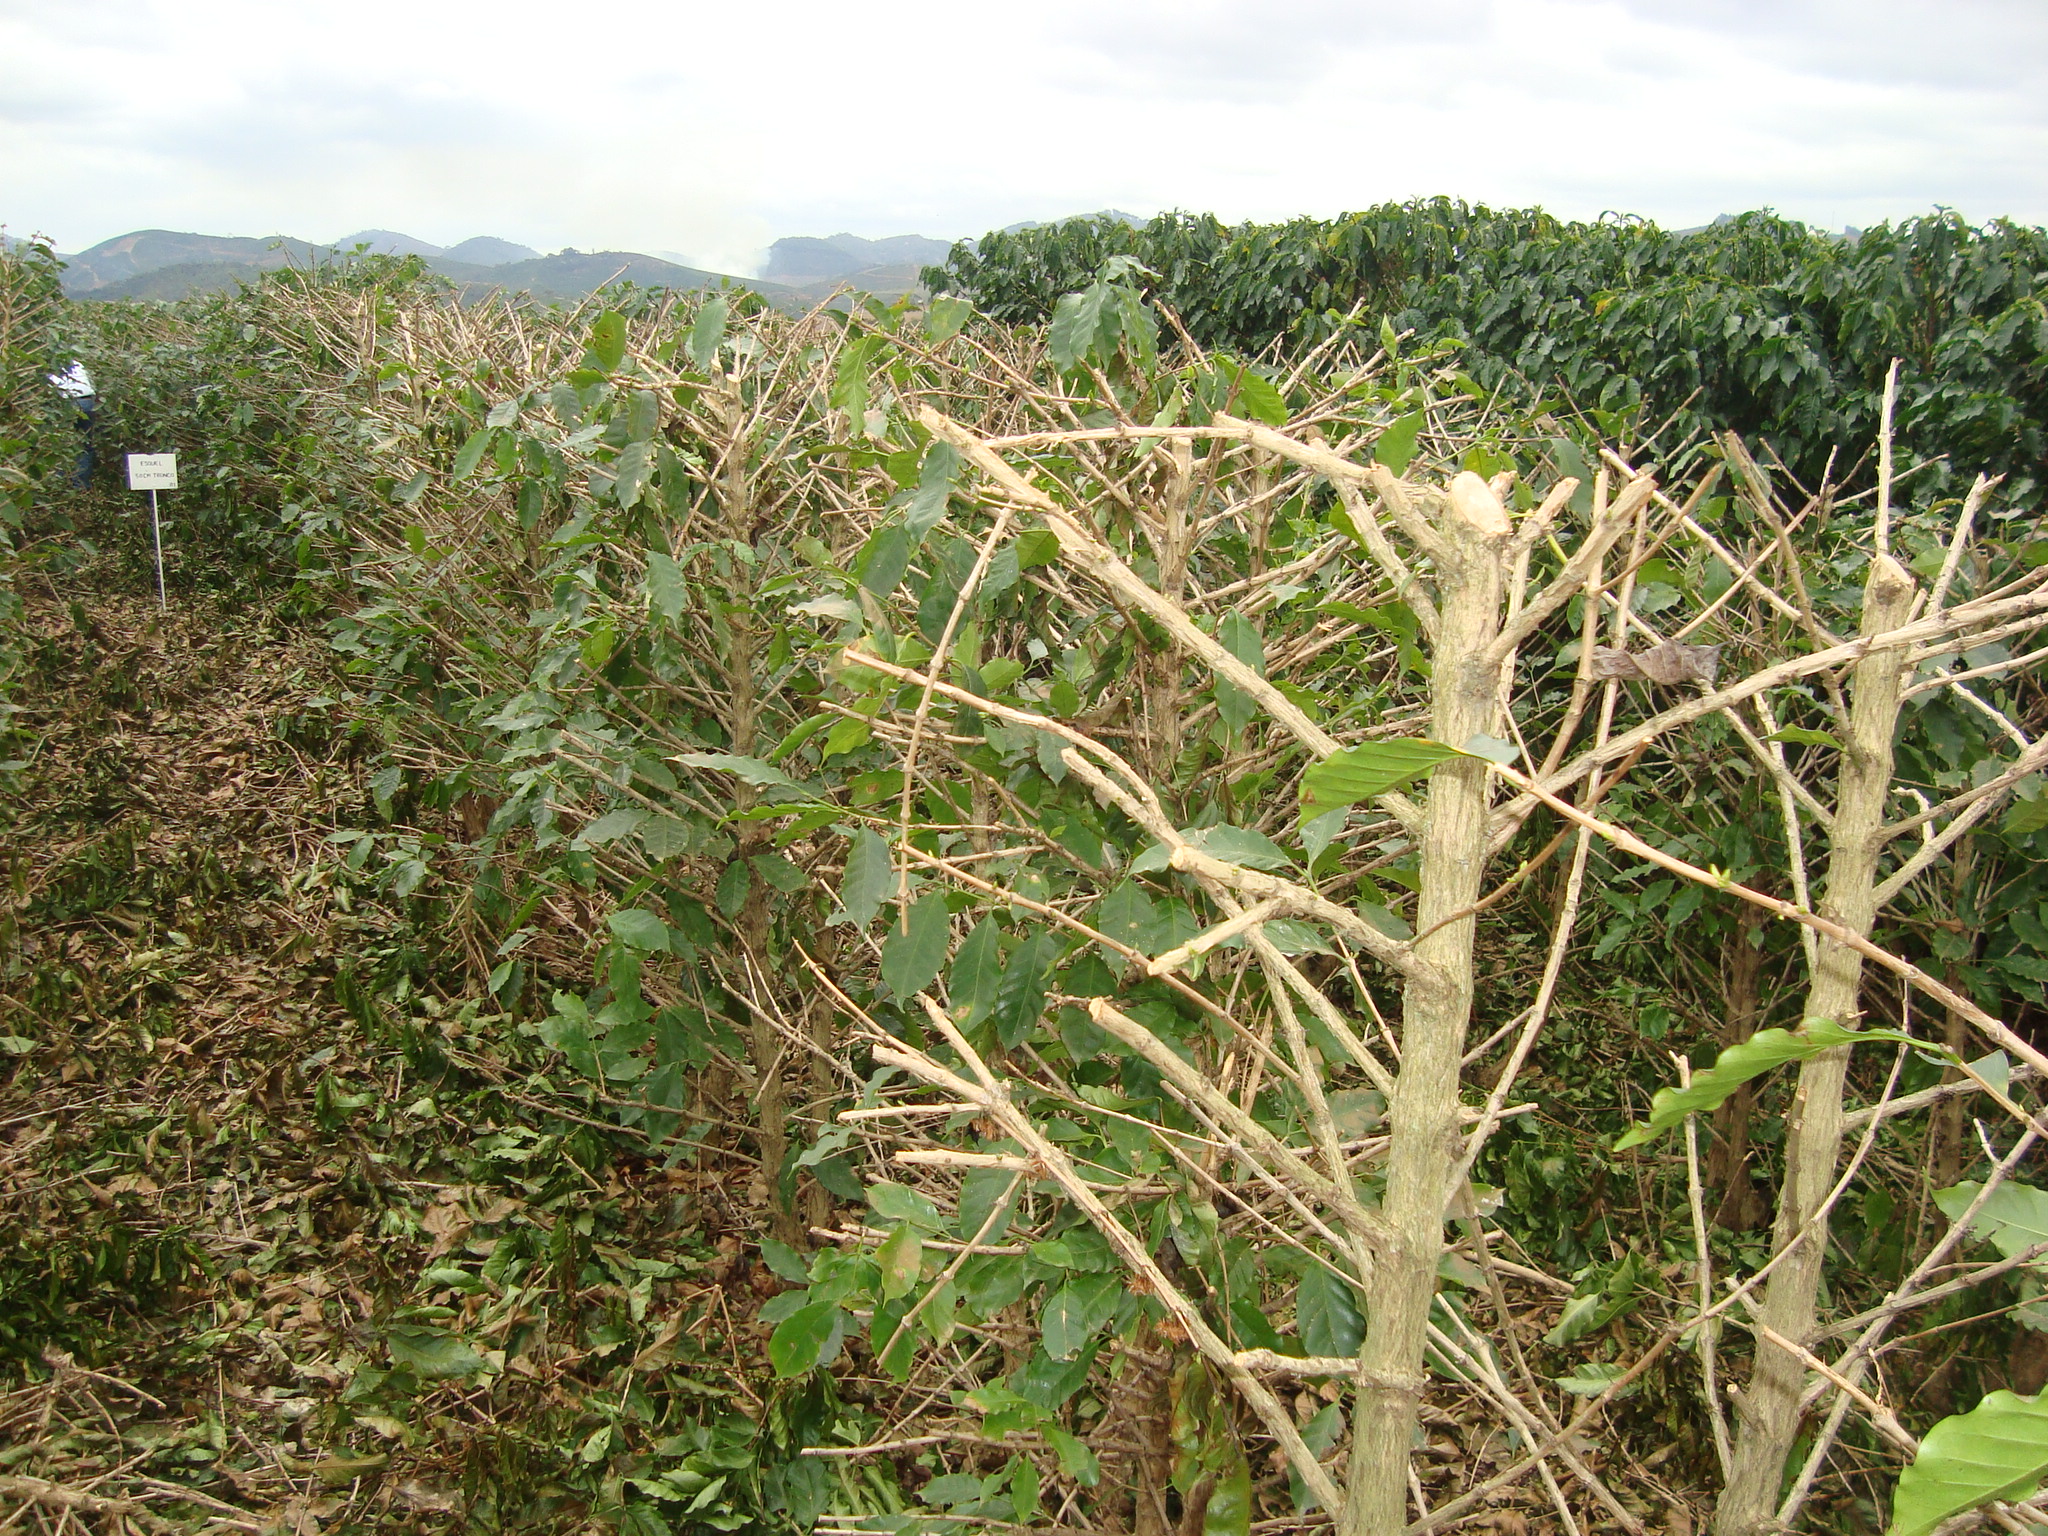 Muitas vezes restam dúvidas sobre as distâncias de corte dos ramos laterais em relação ao tronco, especialmente nas lavouras de café conduzidos em sistema de plantio muito adensado.